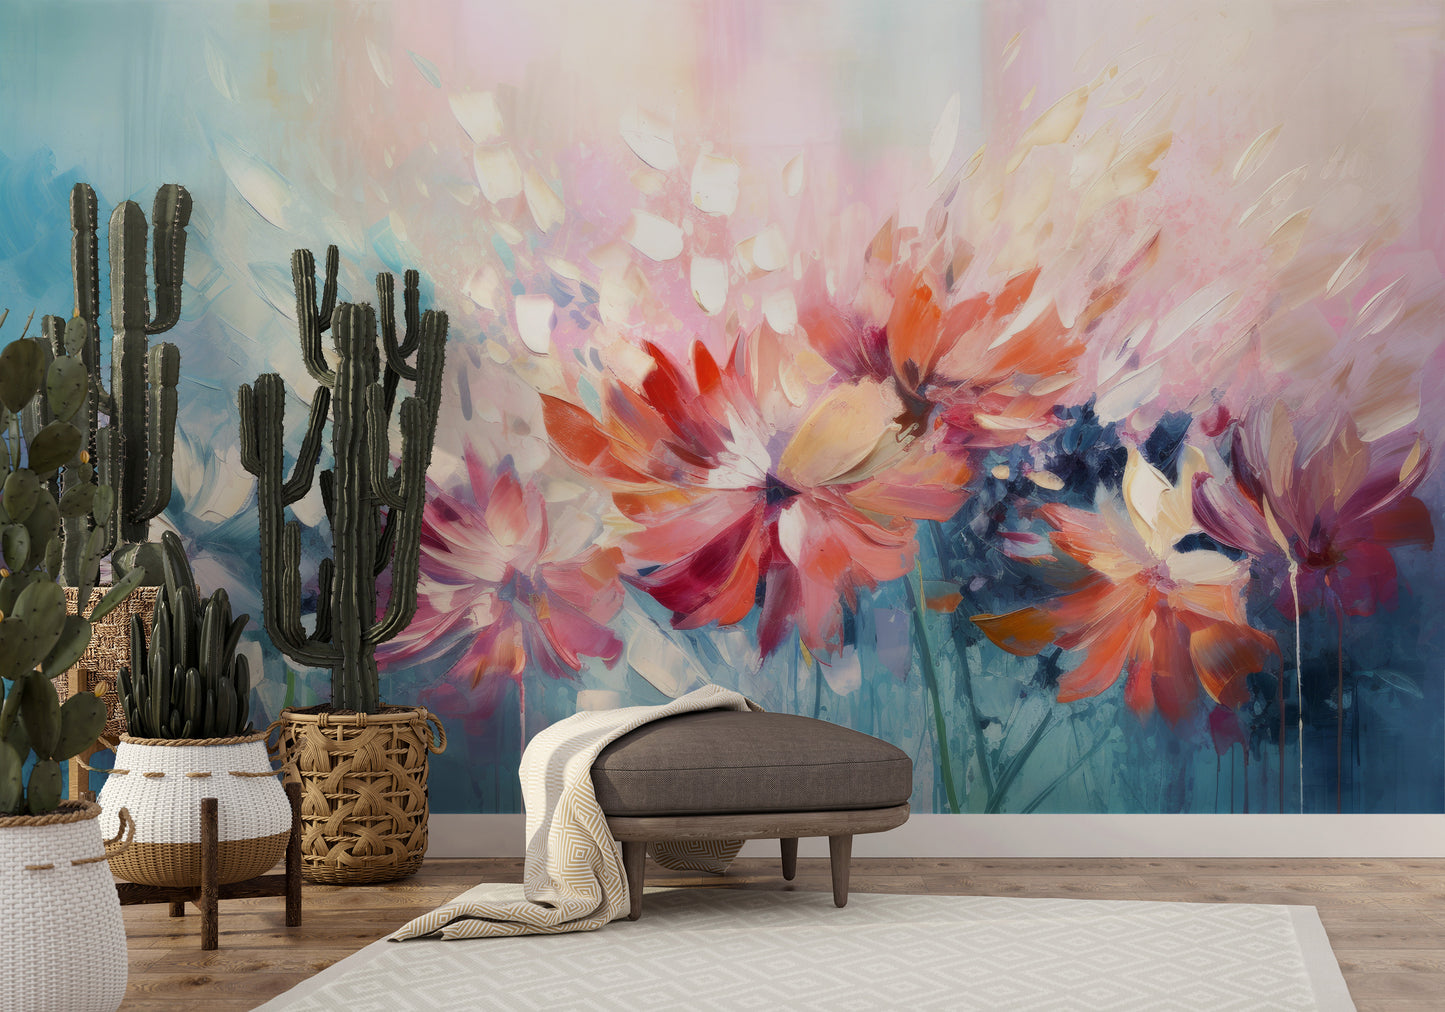 Wzór fototapety malowanej o nazwie Floral Watercolor Fantasy pokazanej w aranżacji wnętrza.